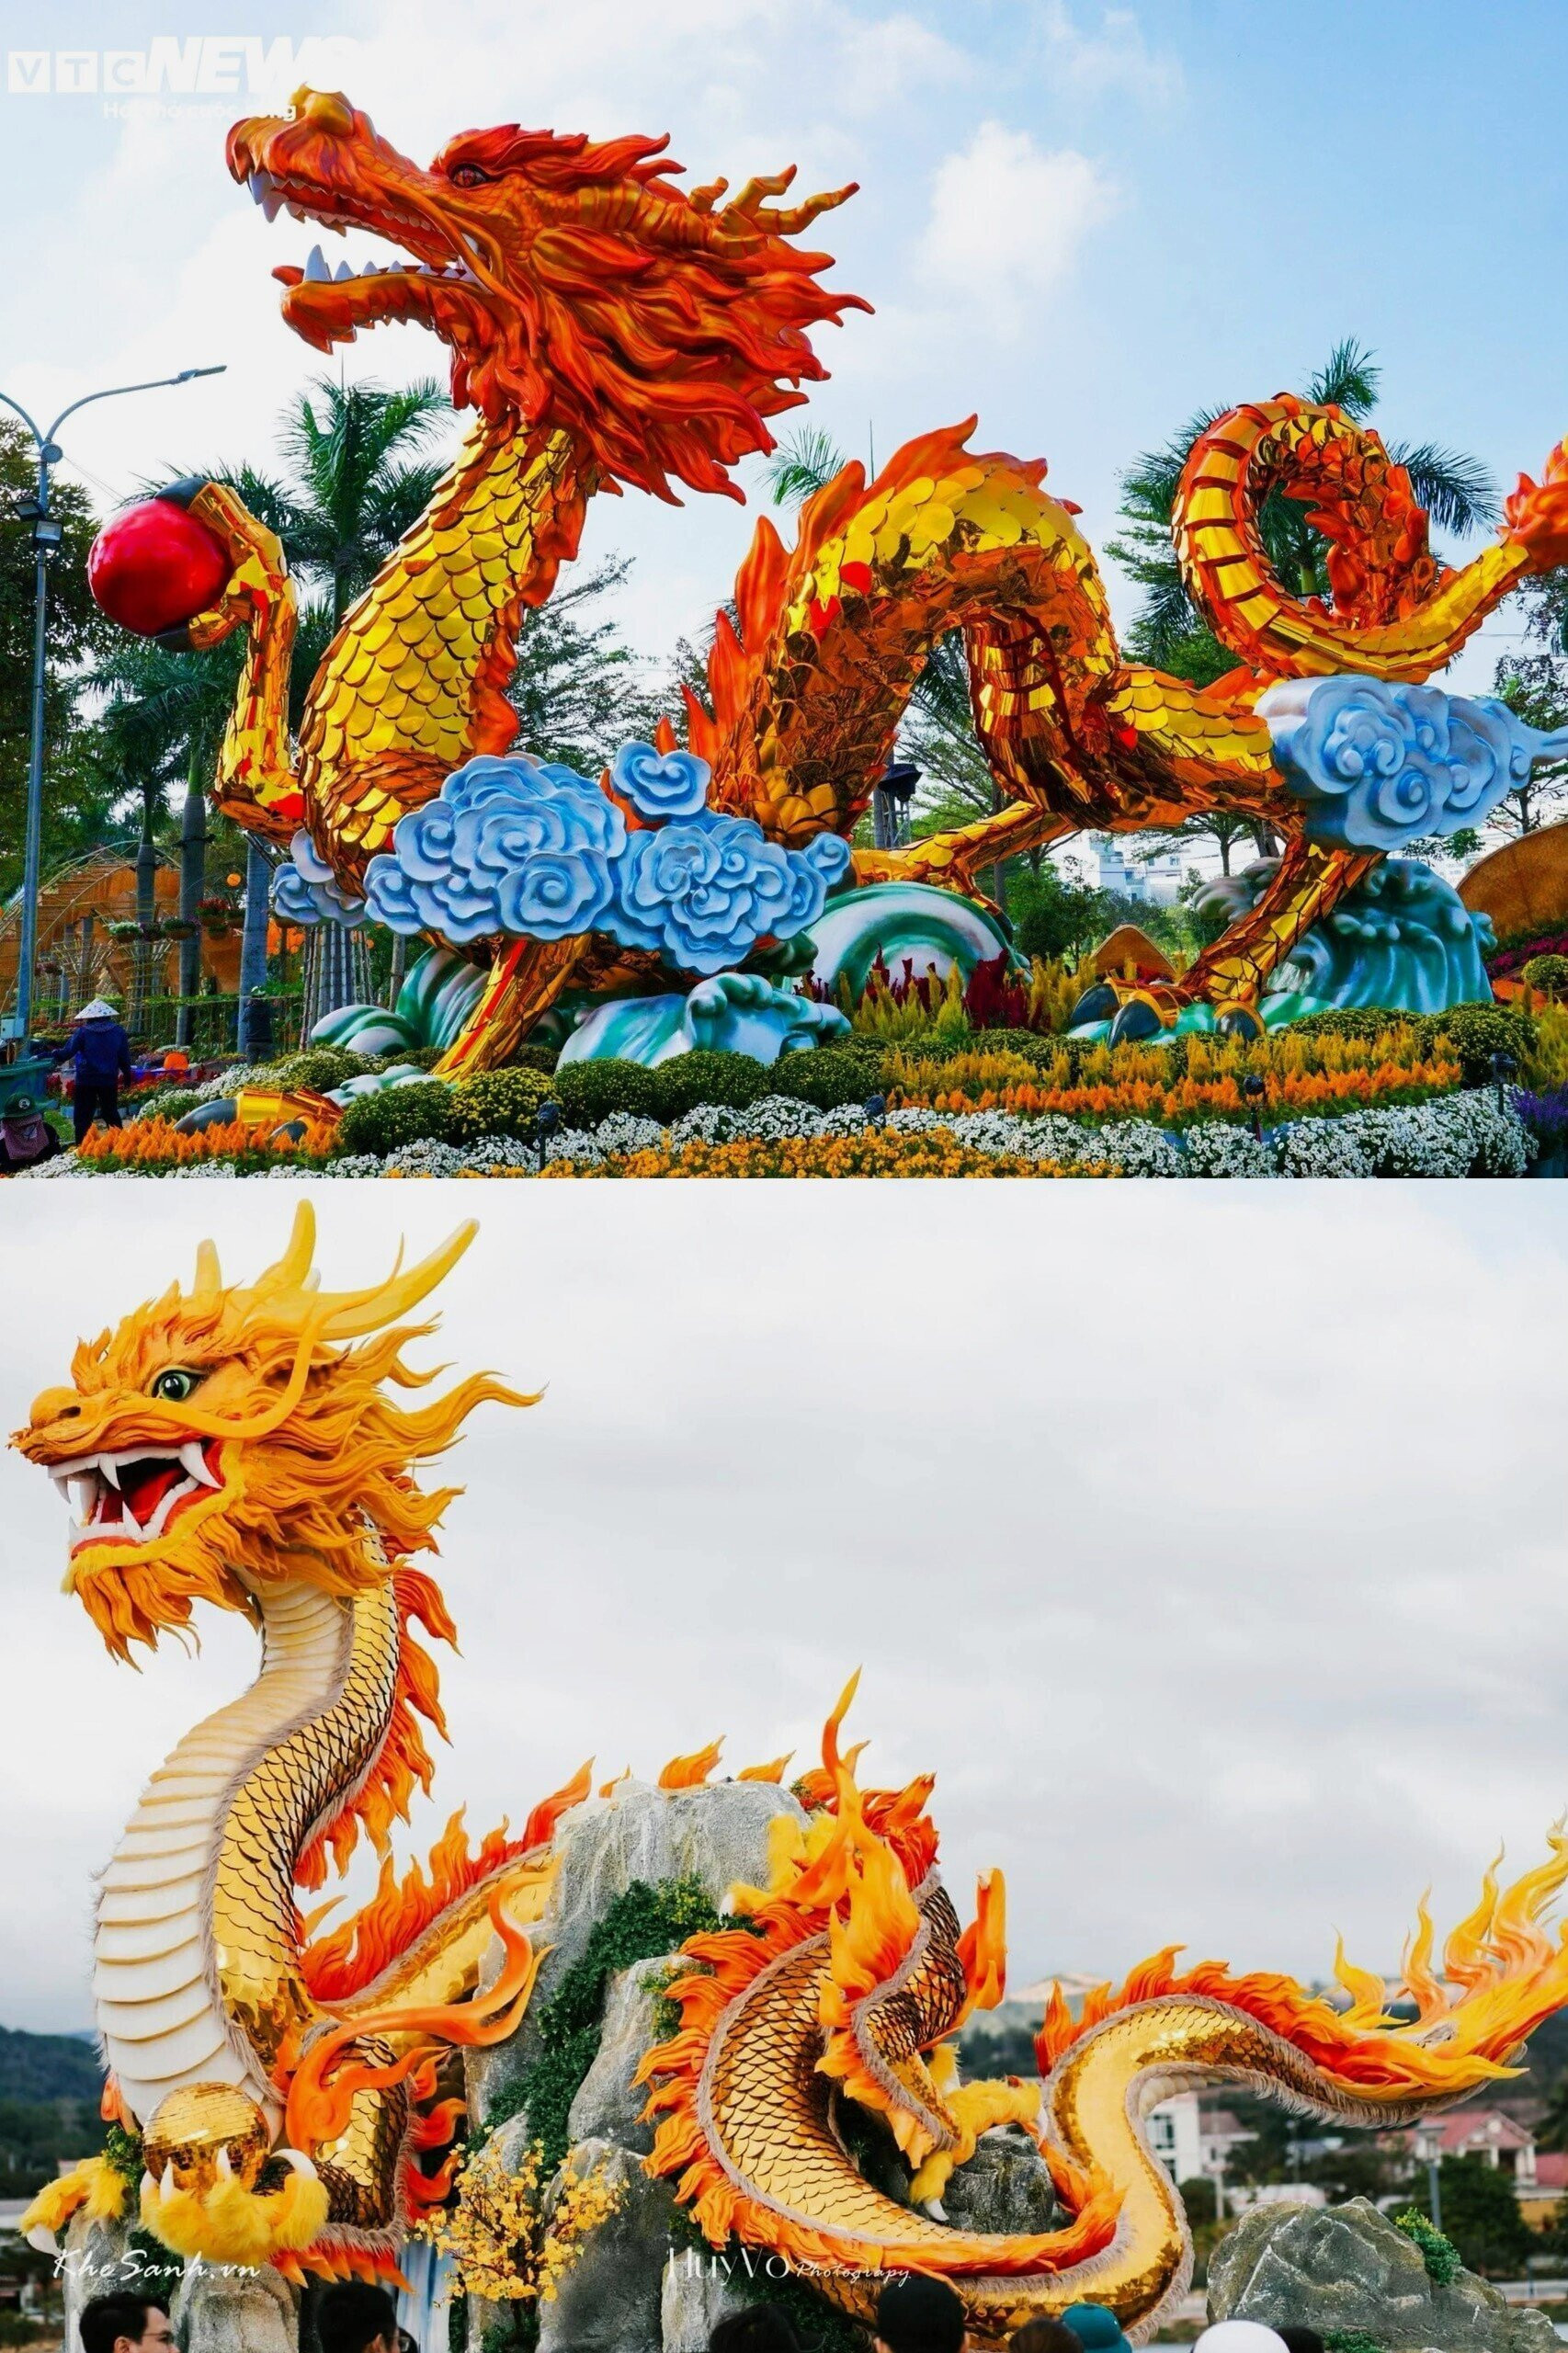 Hai linh vật rồng của Phú Yên và Quảng Trị lần lượt về nhì, ba theo kết quả bình chọn của bạn đọc Báo điện tử VTC News.